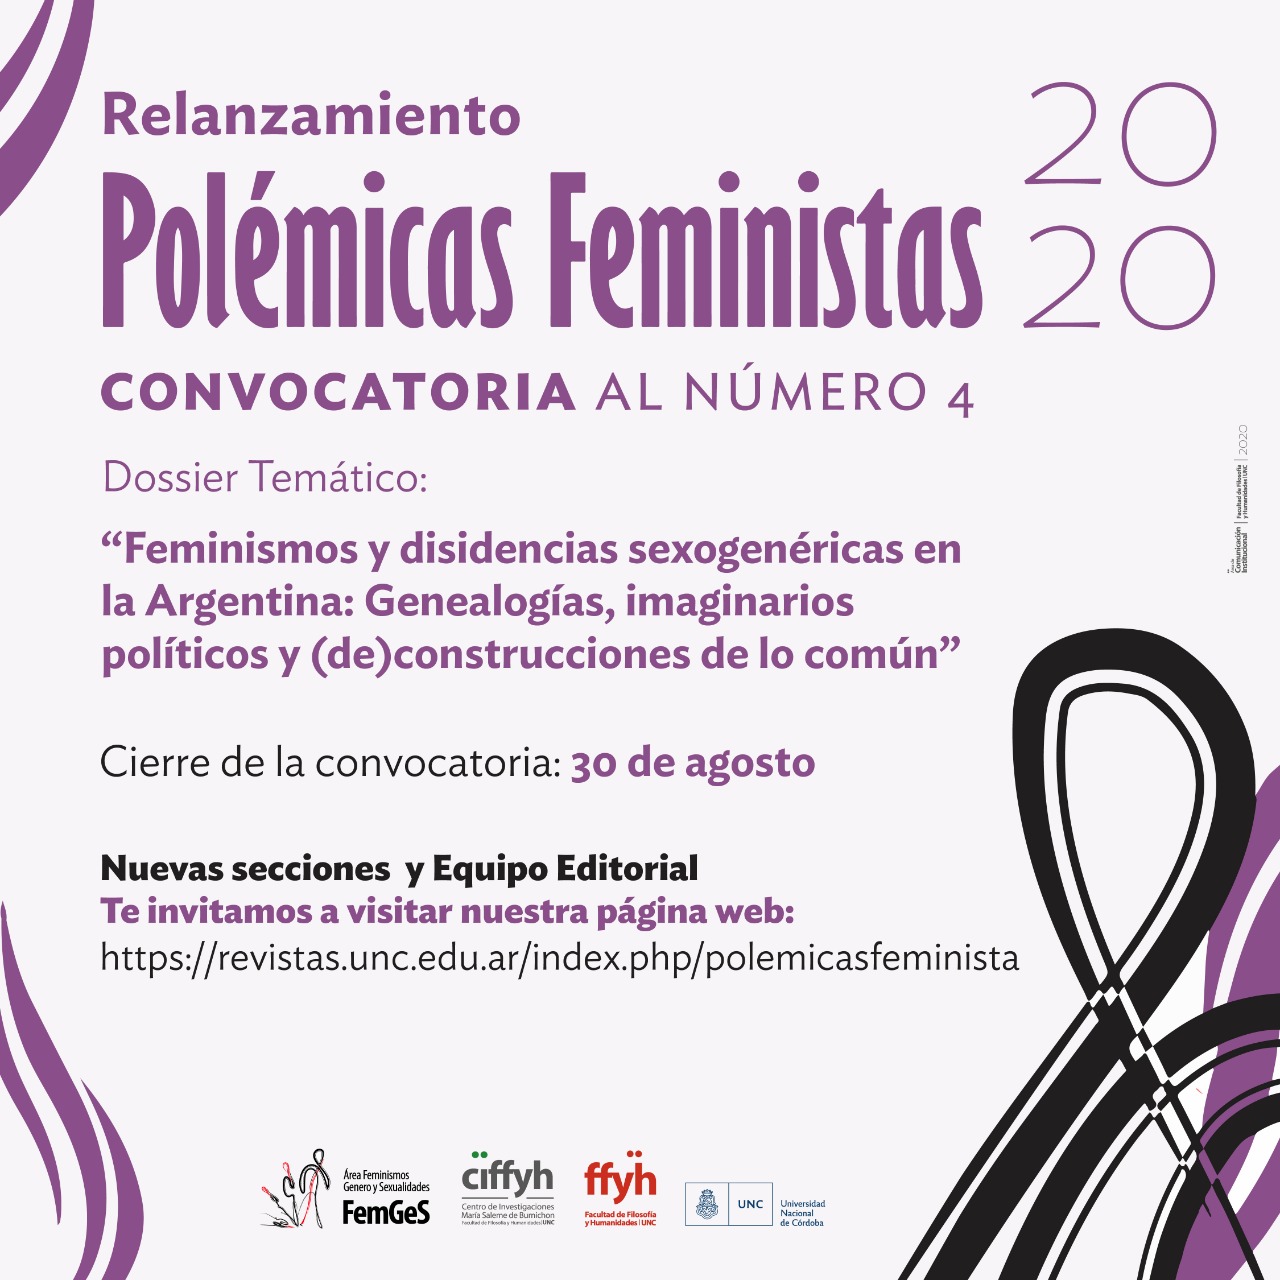 Relanzamiento y nueva convocatoria de la revista Polémicas Feministas